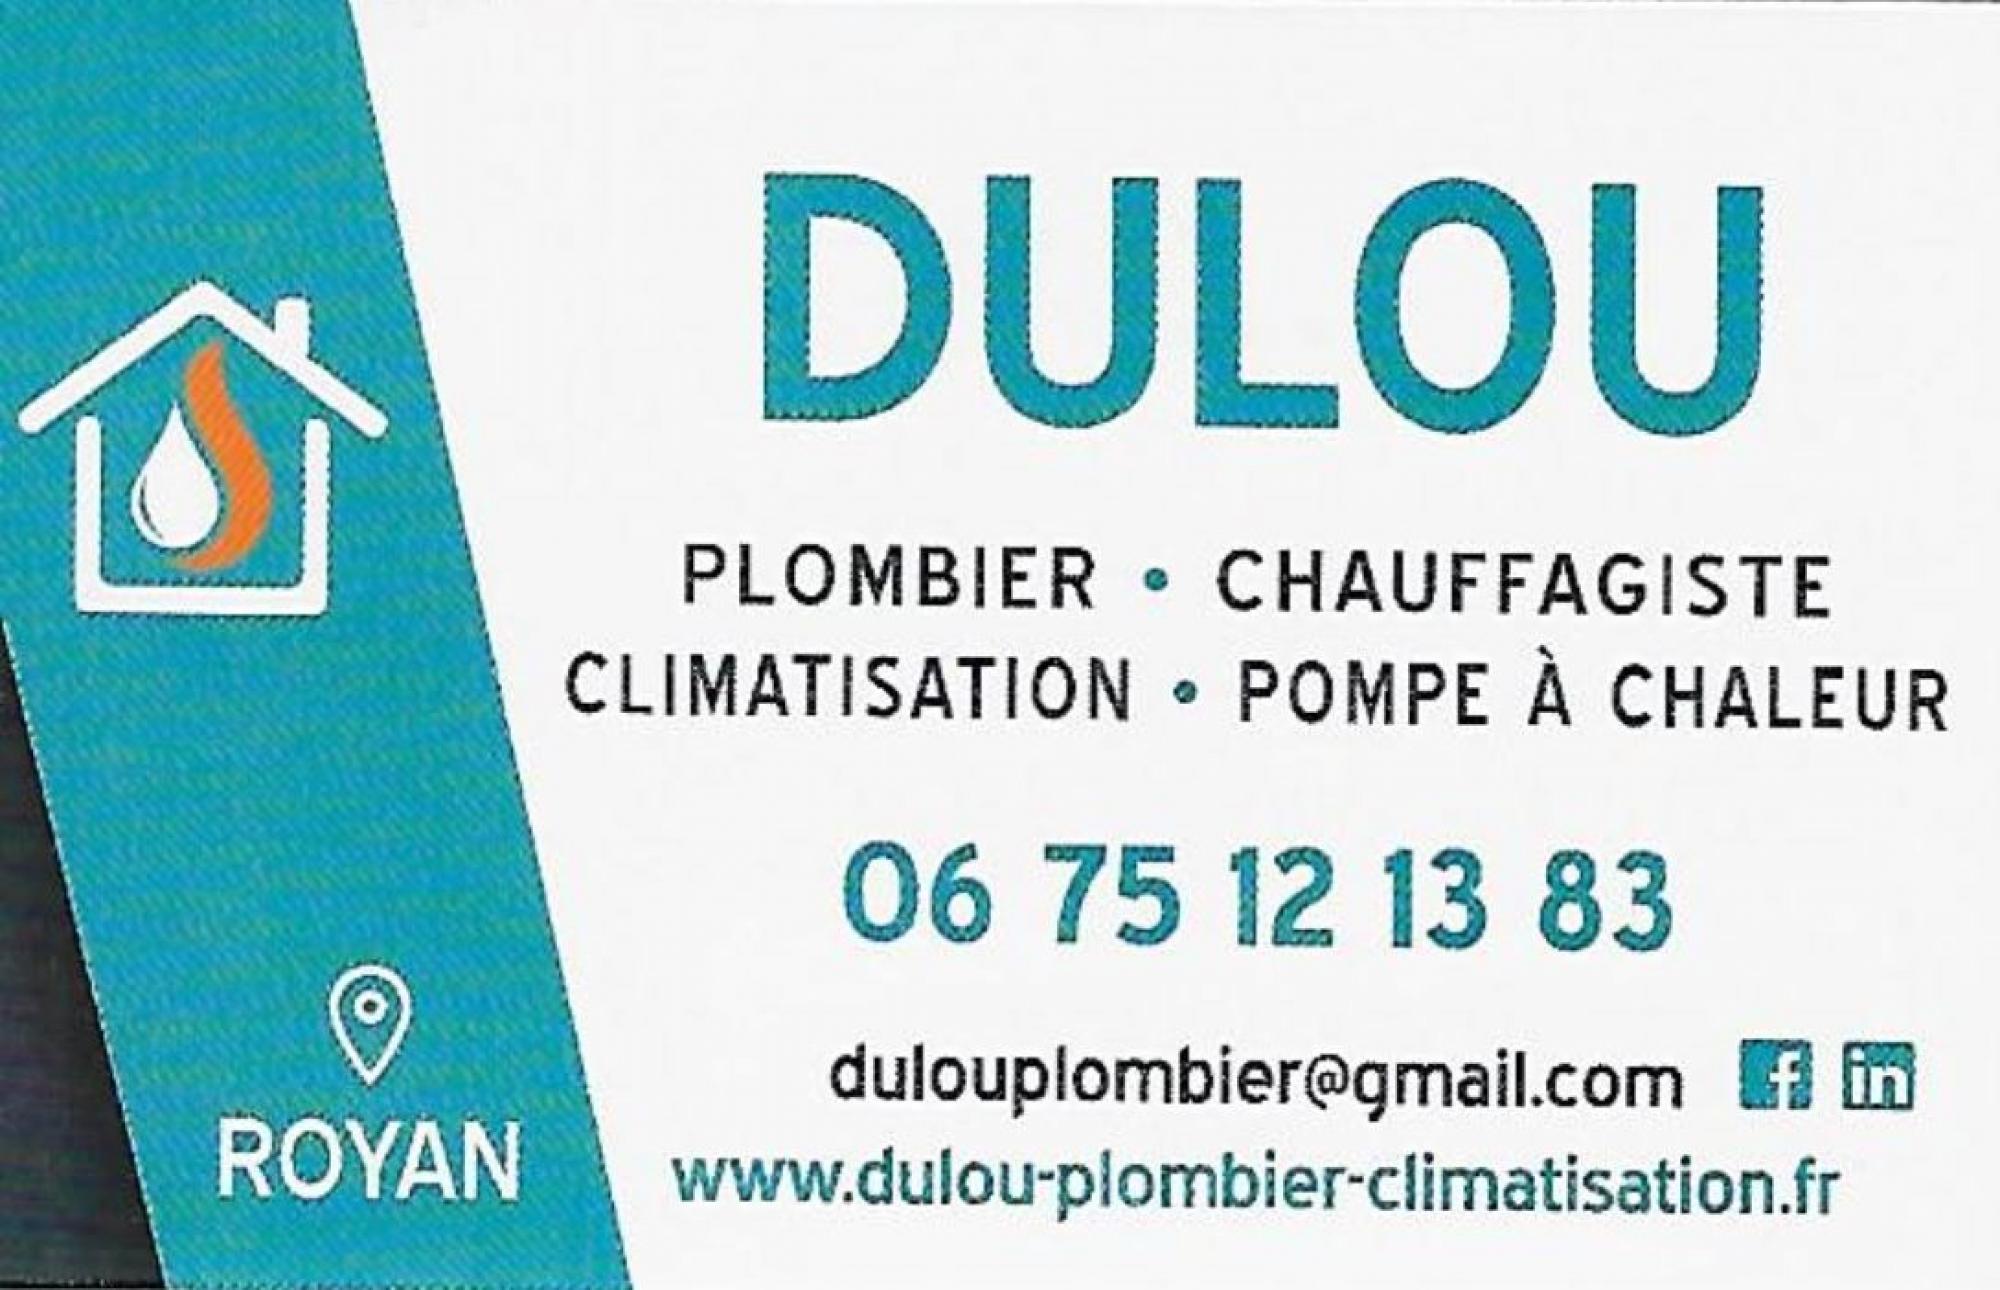 DULOU Plombier - chauffagiste - climatisation - pompe Ã  chaleur 